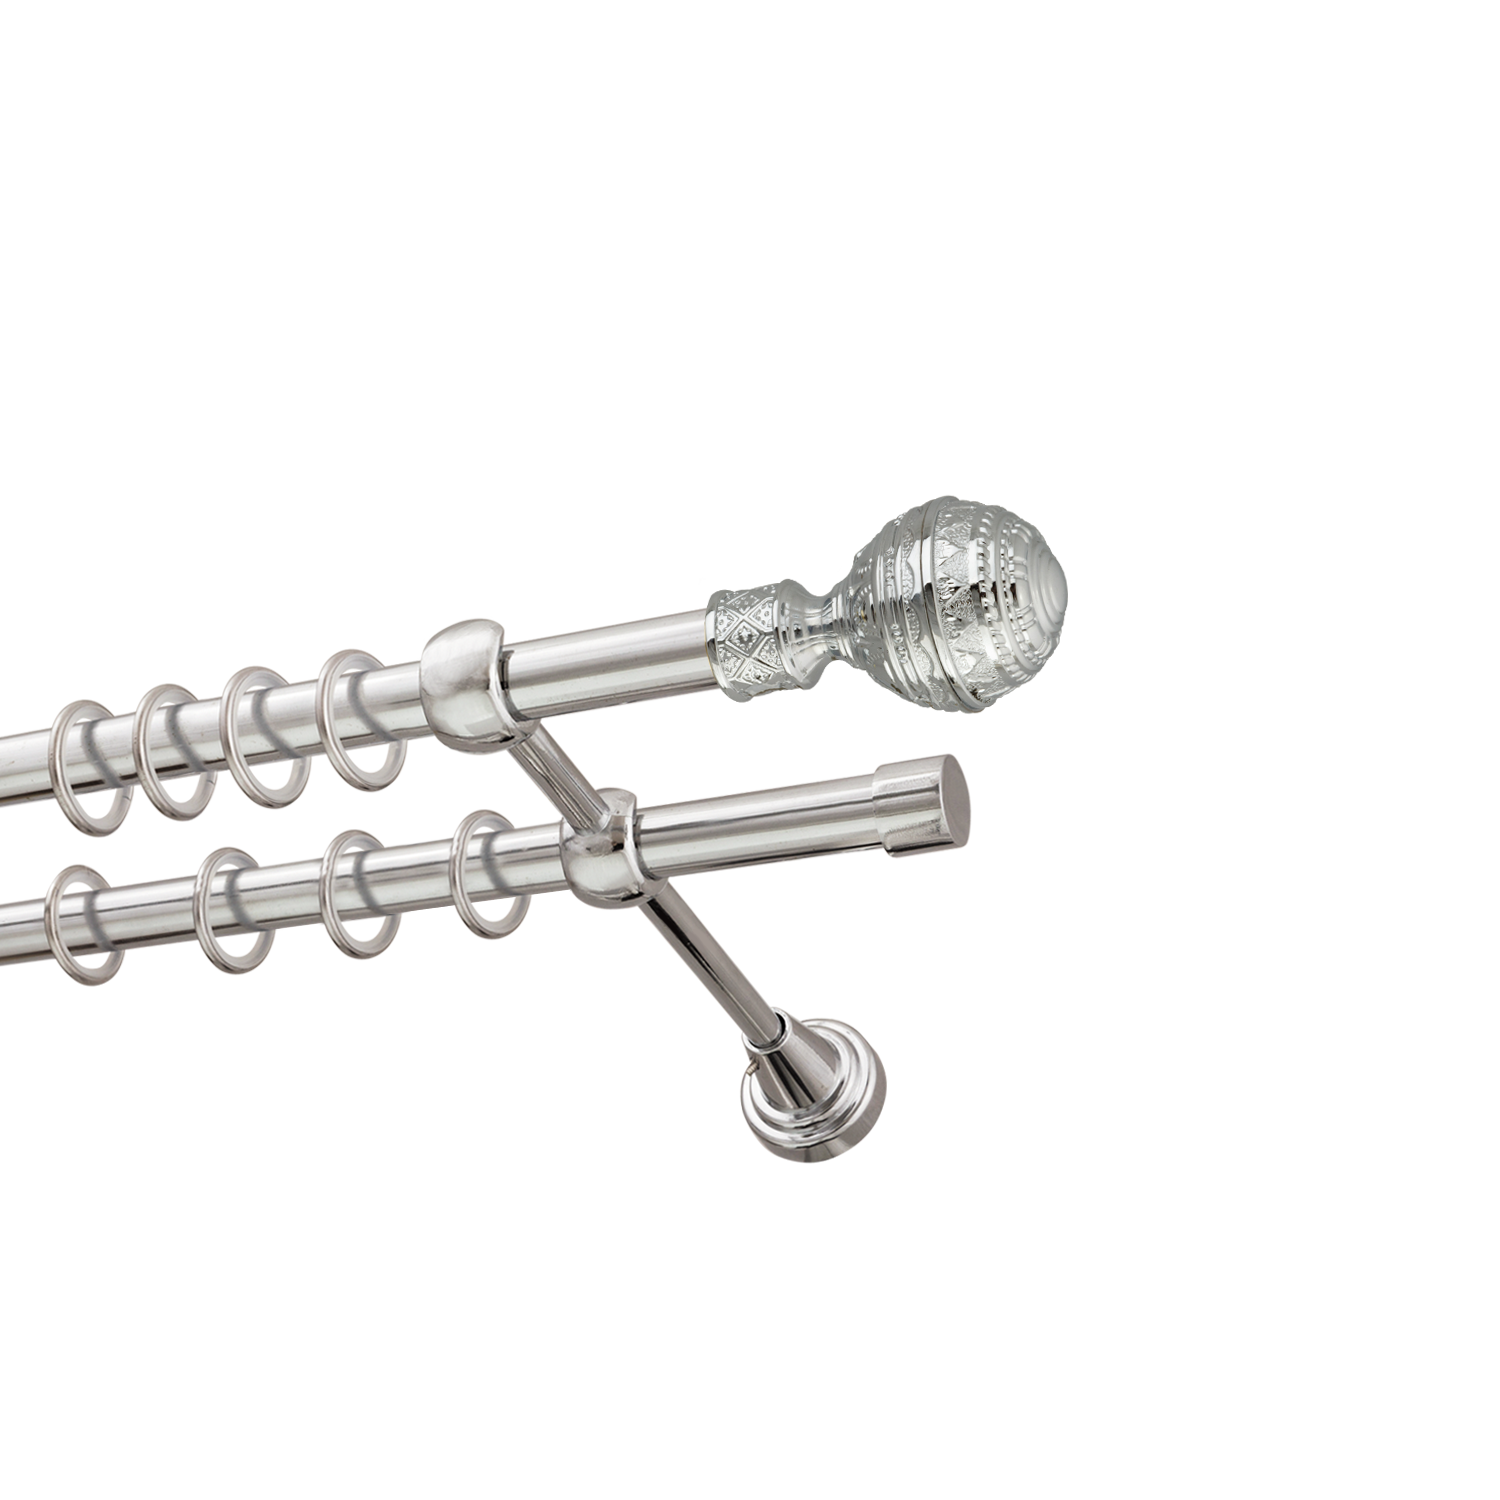 Металлический карниз для штор Роял, двухрядный 16/16 мм, серебро, гладкая штанга, длина 300 см